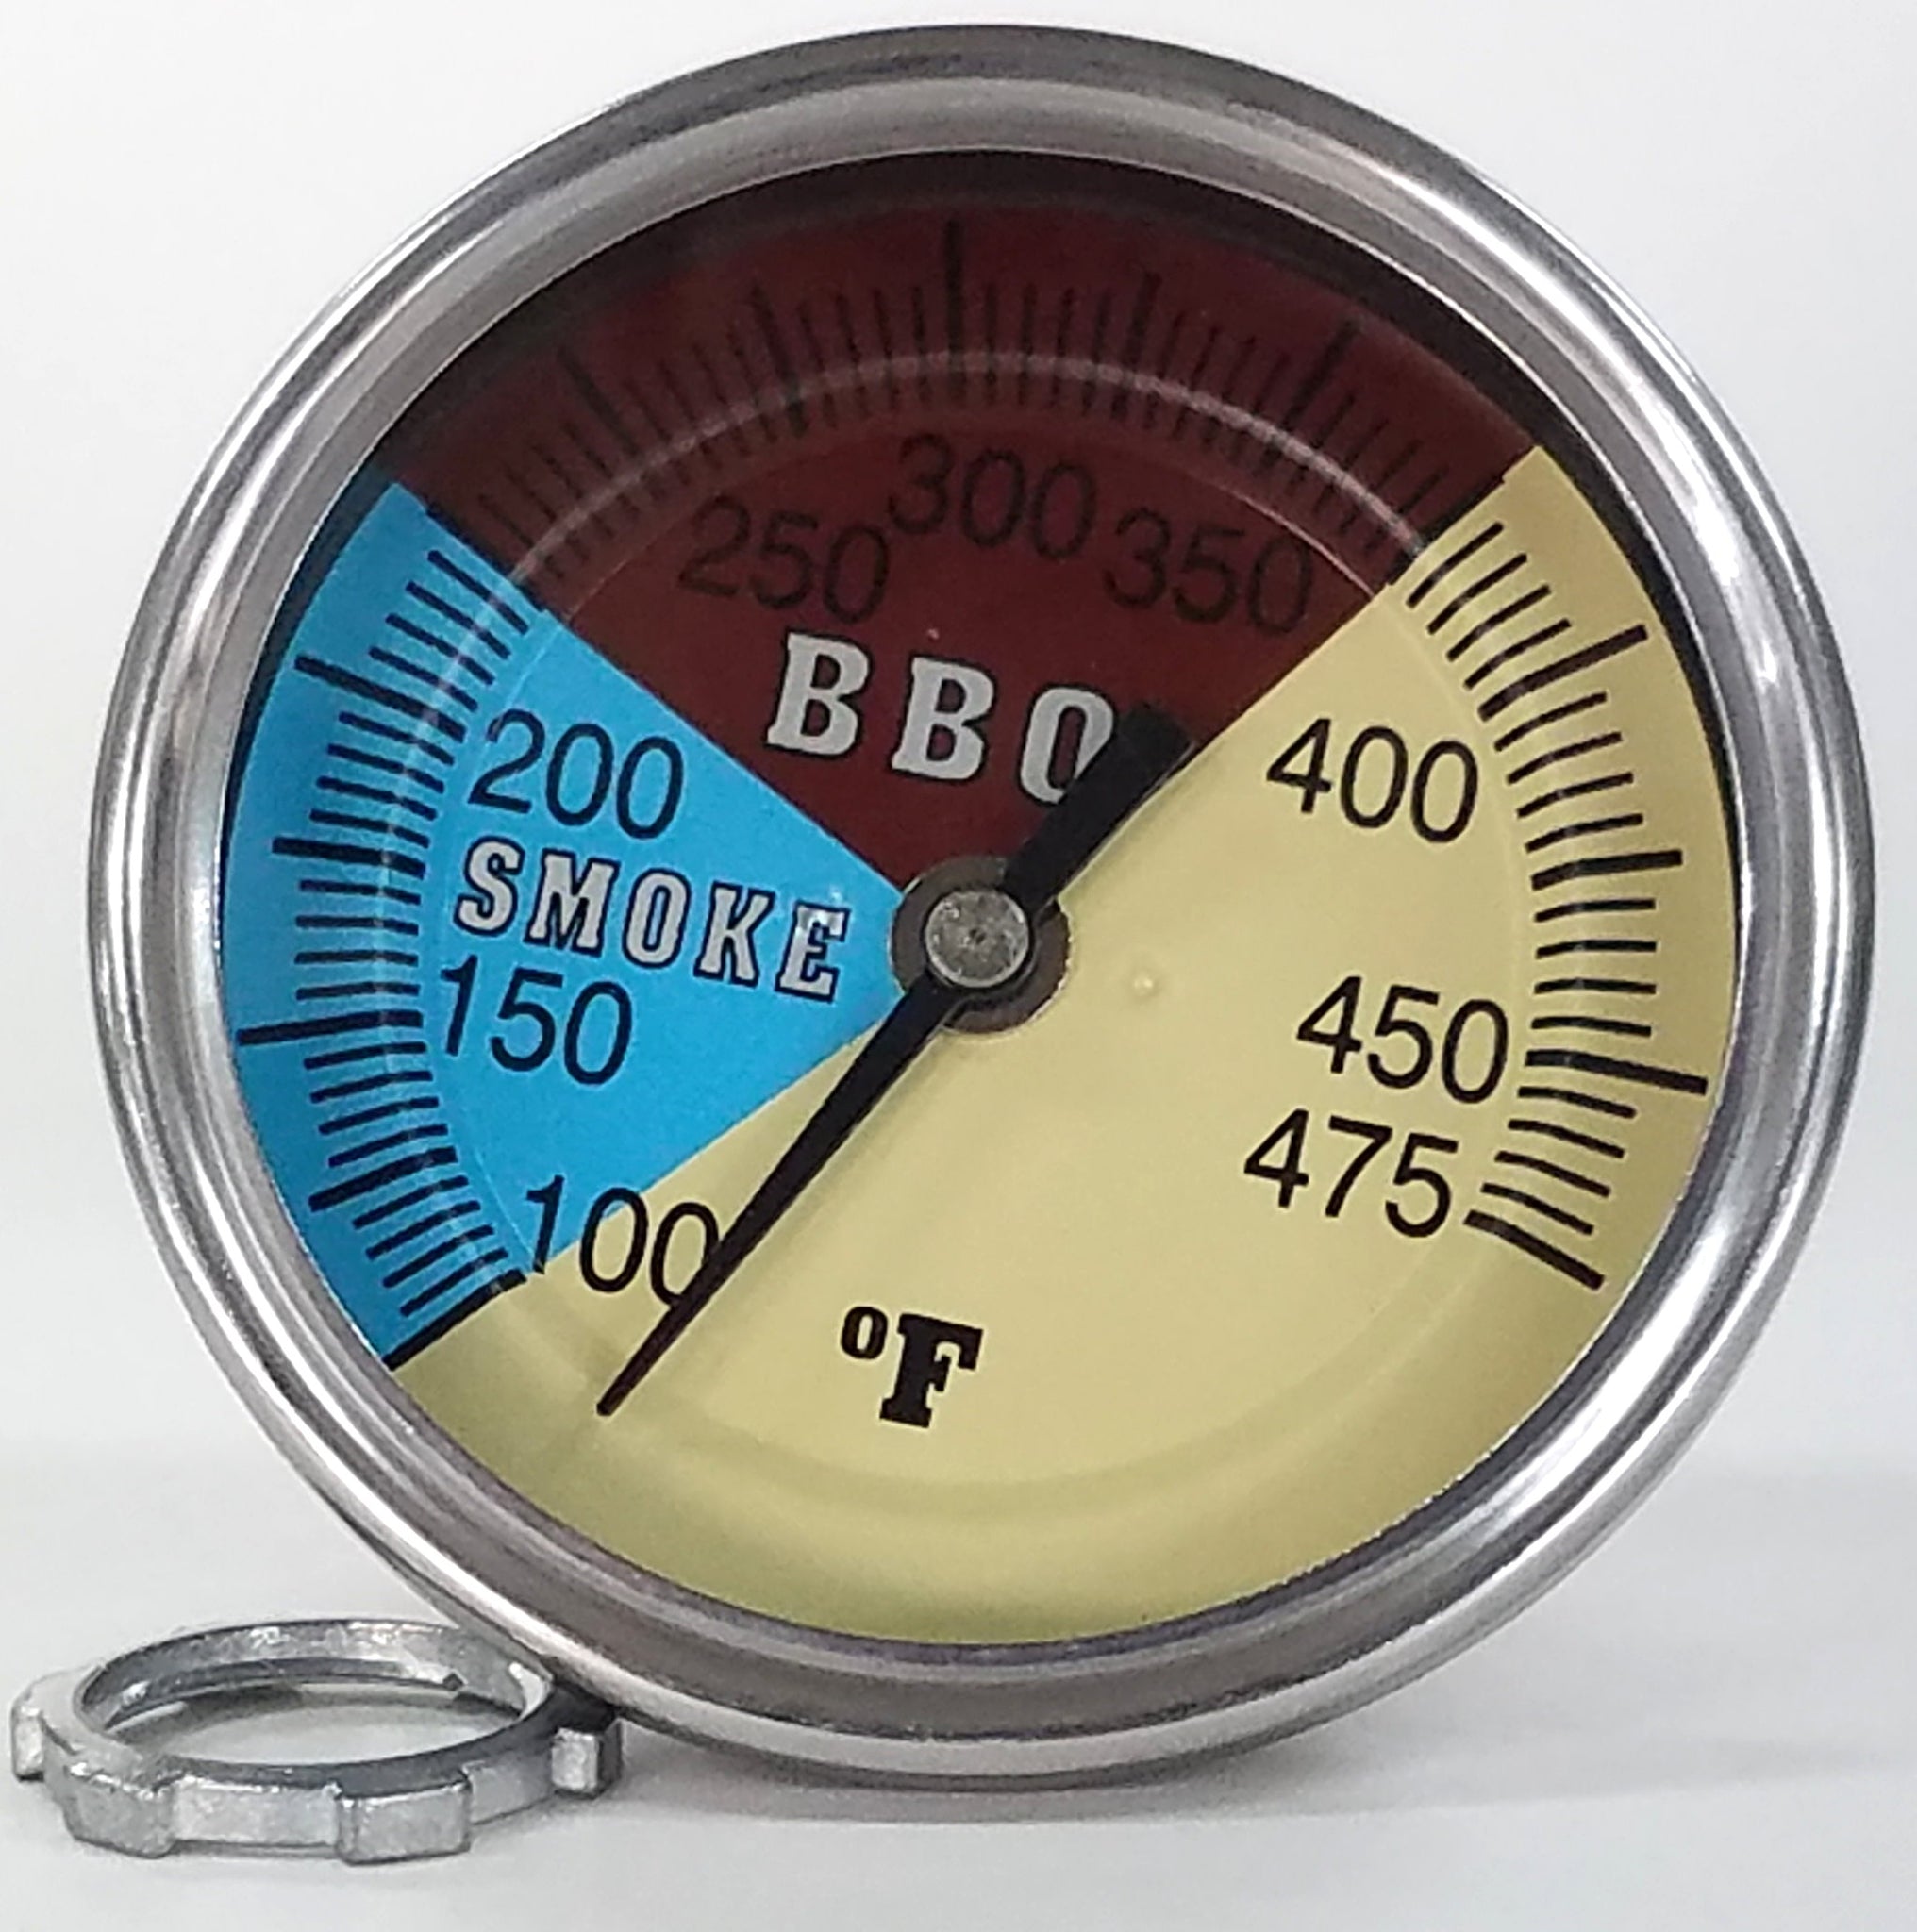 Tel-Tru BQ500 Glow Dial BBQ Grill Thermometer - 6 Stem